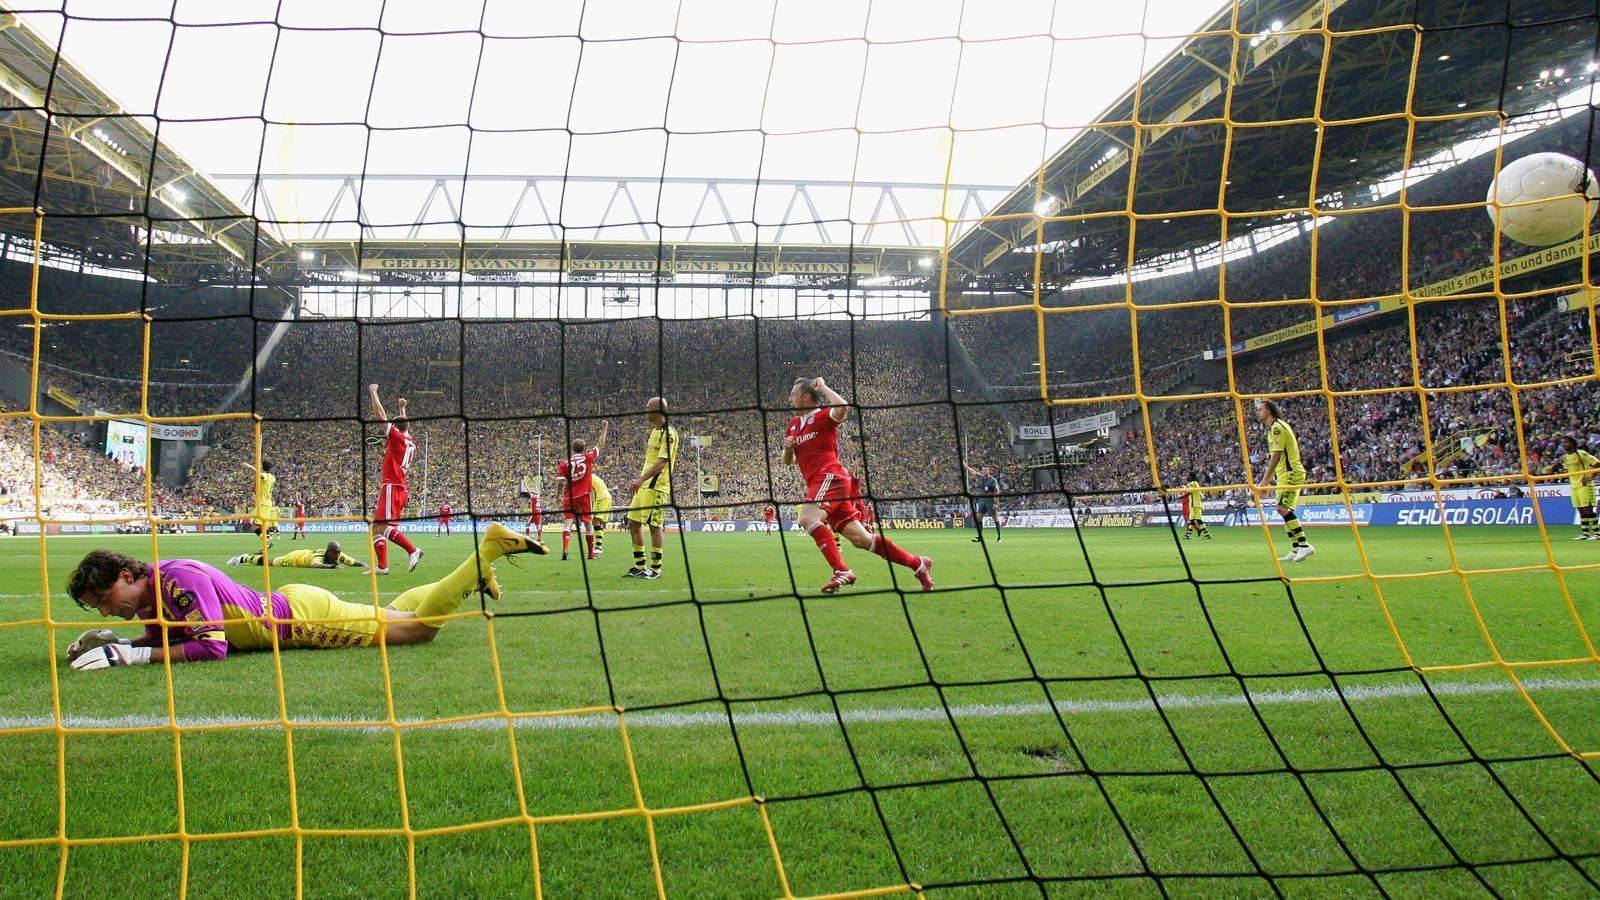 
                <strong>Borussia Dortmund - FC Bayern München 1:5 (12. September 2009)</strong><br>
                Heute ist Dortmund gegen Bayern ein Bundesliga-Duell auf Augenhöhe, doch 2009 war das noch nicht wieder der Fall. Damals war die Borussia unter Jürgen Klopp gerade erst wieder im Begriff, den Anschluss an die Bundesliga-Spitzenteams herzustellen und musste noch so manchen Rückschlag hinnehmen. Einer dieser Rückschläge war die 1:5-Heimniederlage am fünften Spieltag der Saison 2009/10 gegen den FCB. Dabei brachte Mats Hummels den BVB noch früh in Führung, ehe die Bayern ins Rollen kamen. Noch vor der Pause glich Mario Gomez für den FCB aus, direkt nach Wiederbeginn traf Bastian Schweinsteiger für die Münchner und drehte so das Spiel. In den letzten 25 Minuten verursachte ein weiteres Bayern-Tor durch Franck Ribery sowie ein Doppelpack von Thomas Müller ein Dortmunder Heim-Debakel. Aber: Nur gut anderthalb Jahre war der BVB wieder mal obenauf, holte 2011 und 2012 den Meistertitel. 
              